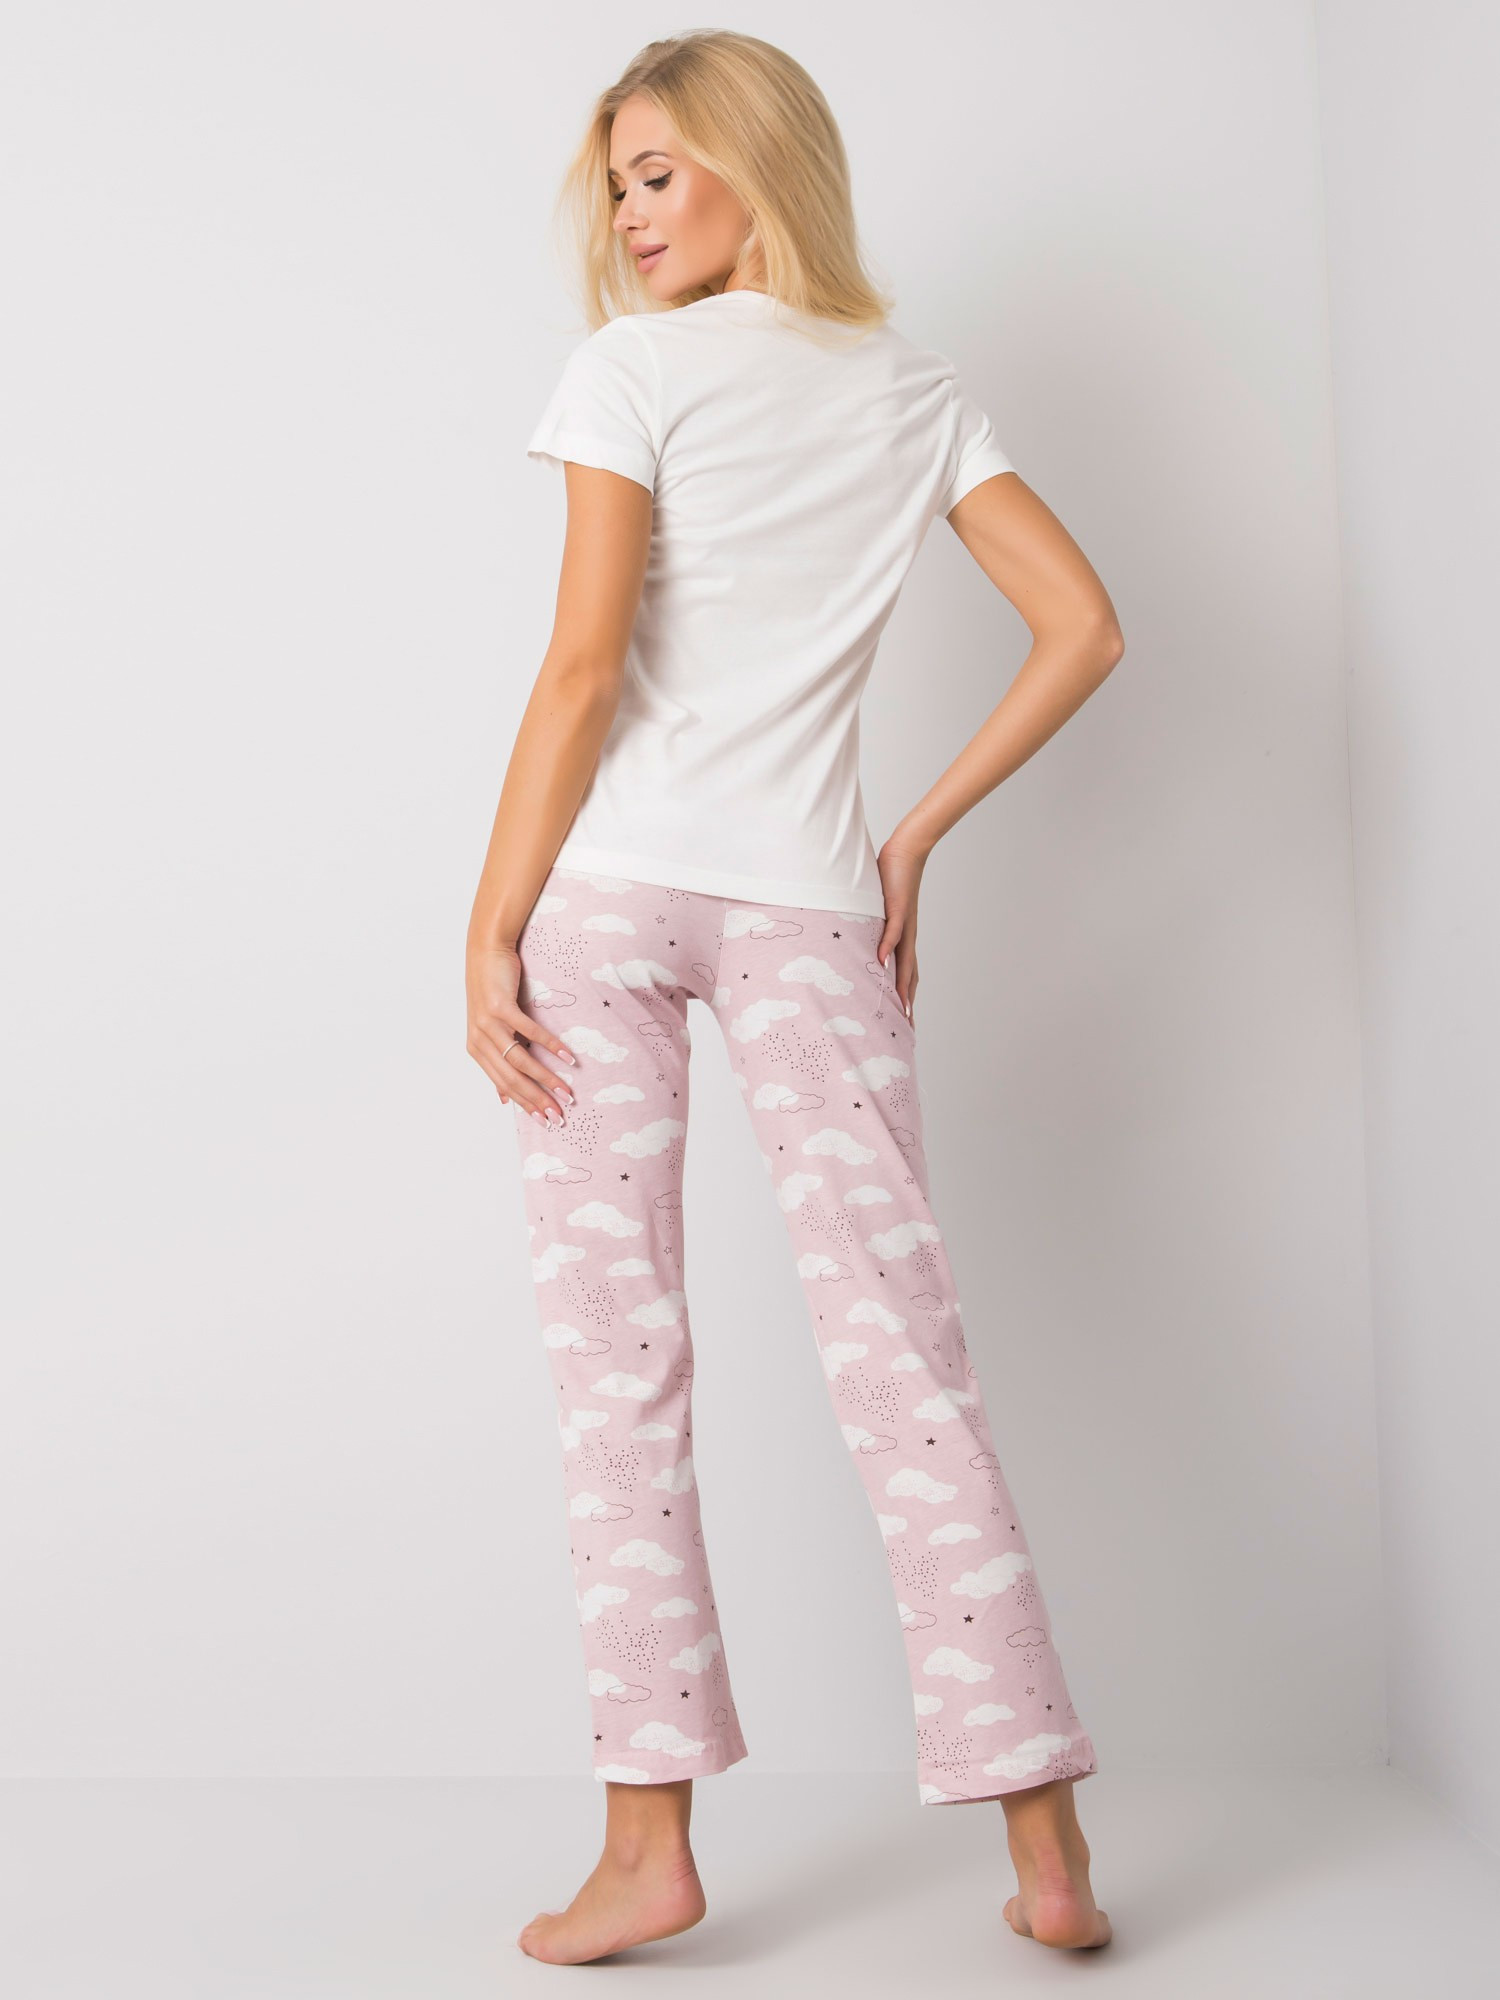 Pyžamo BR PI 3256 biele a ružové XL